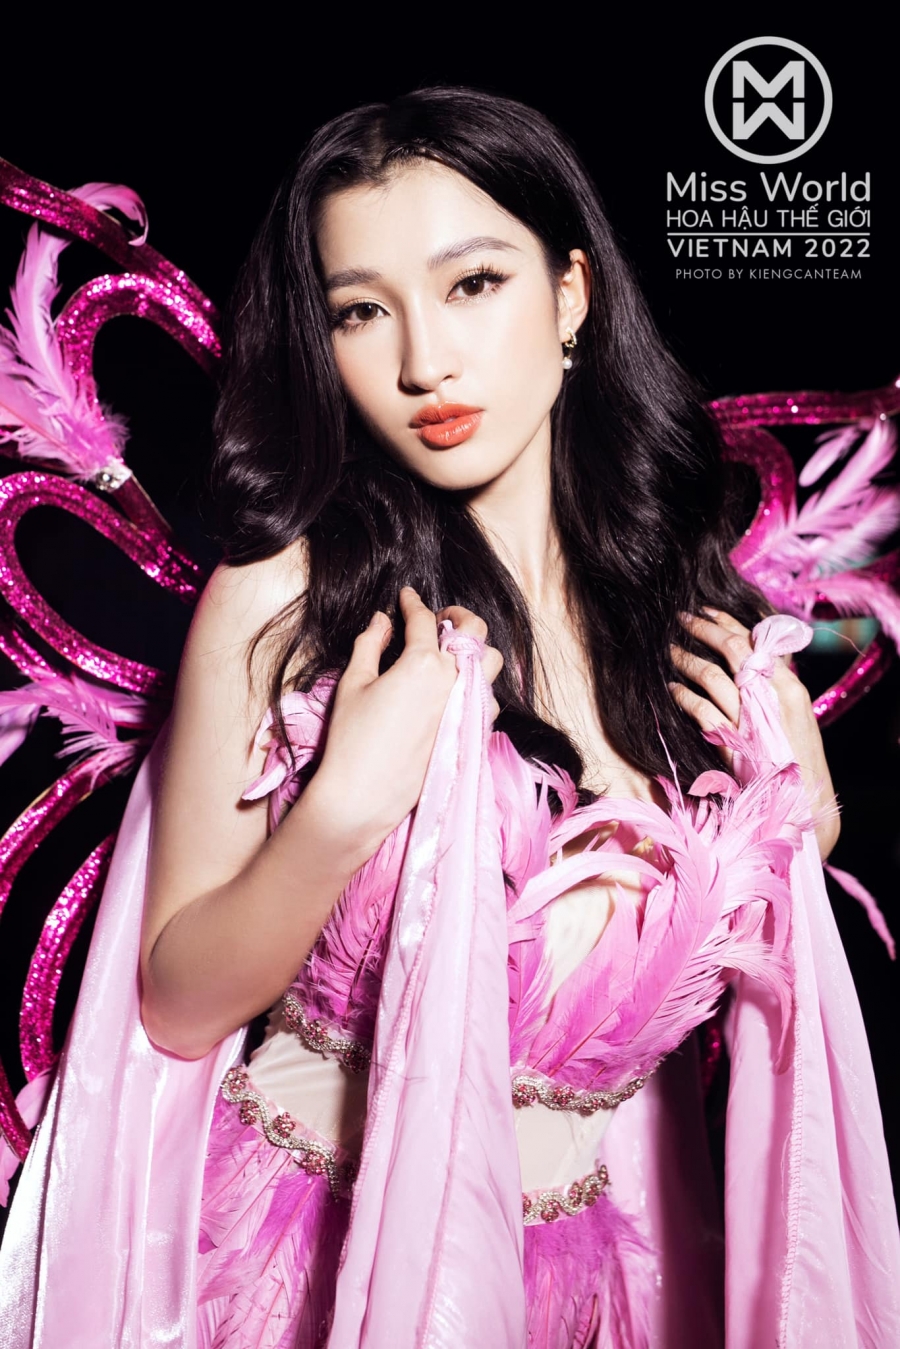 Á hậu Phương Nhi là ai? Người đẹp Miss World Vietnam 2022 có vòng eo siêu nhỏ - Ảnh 4